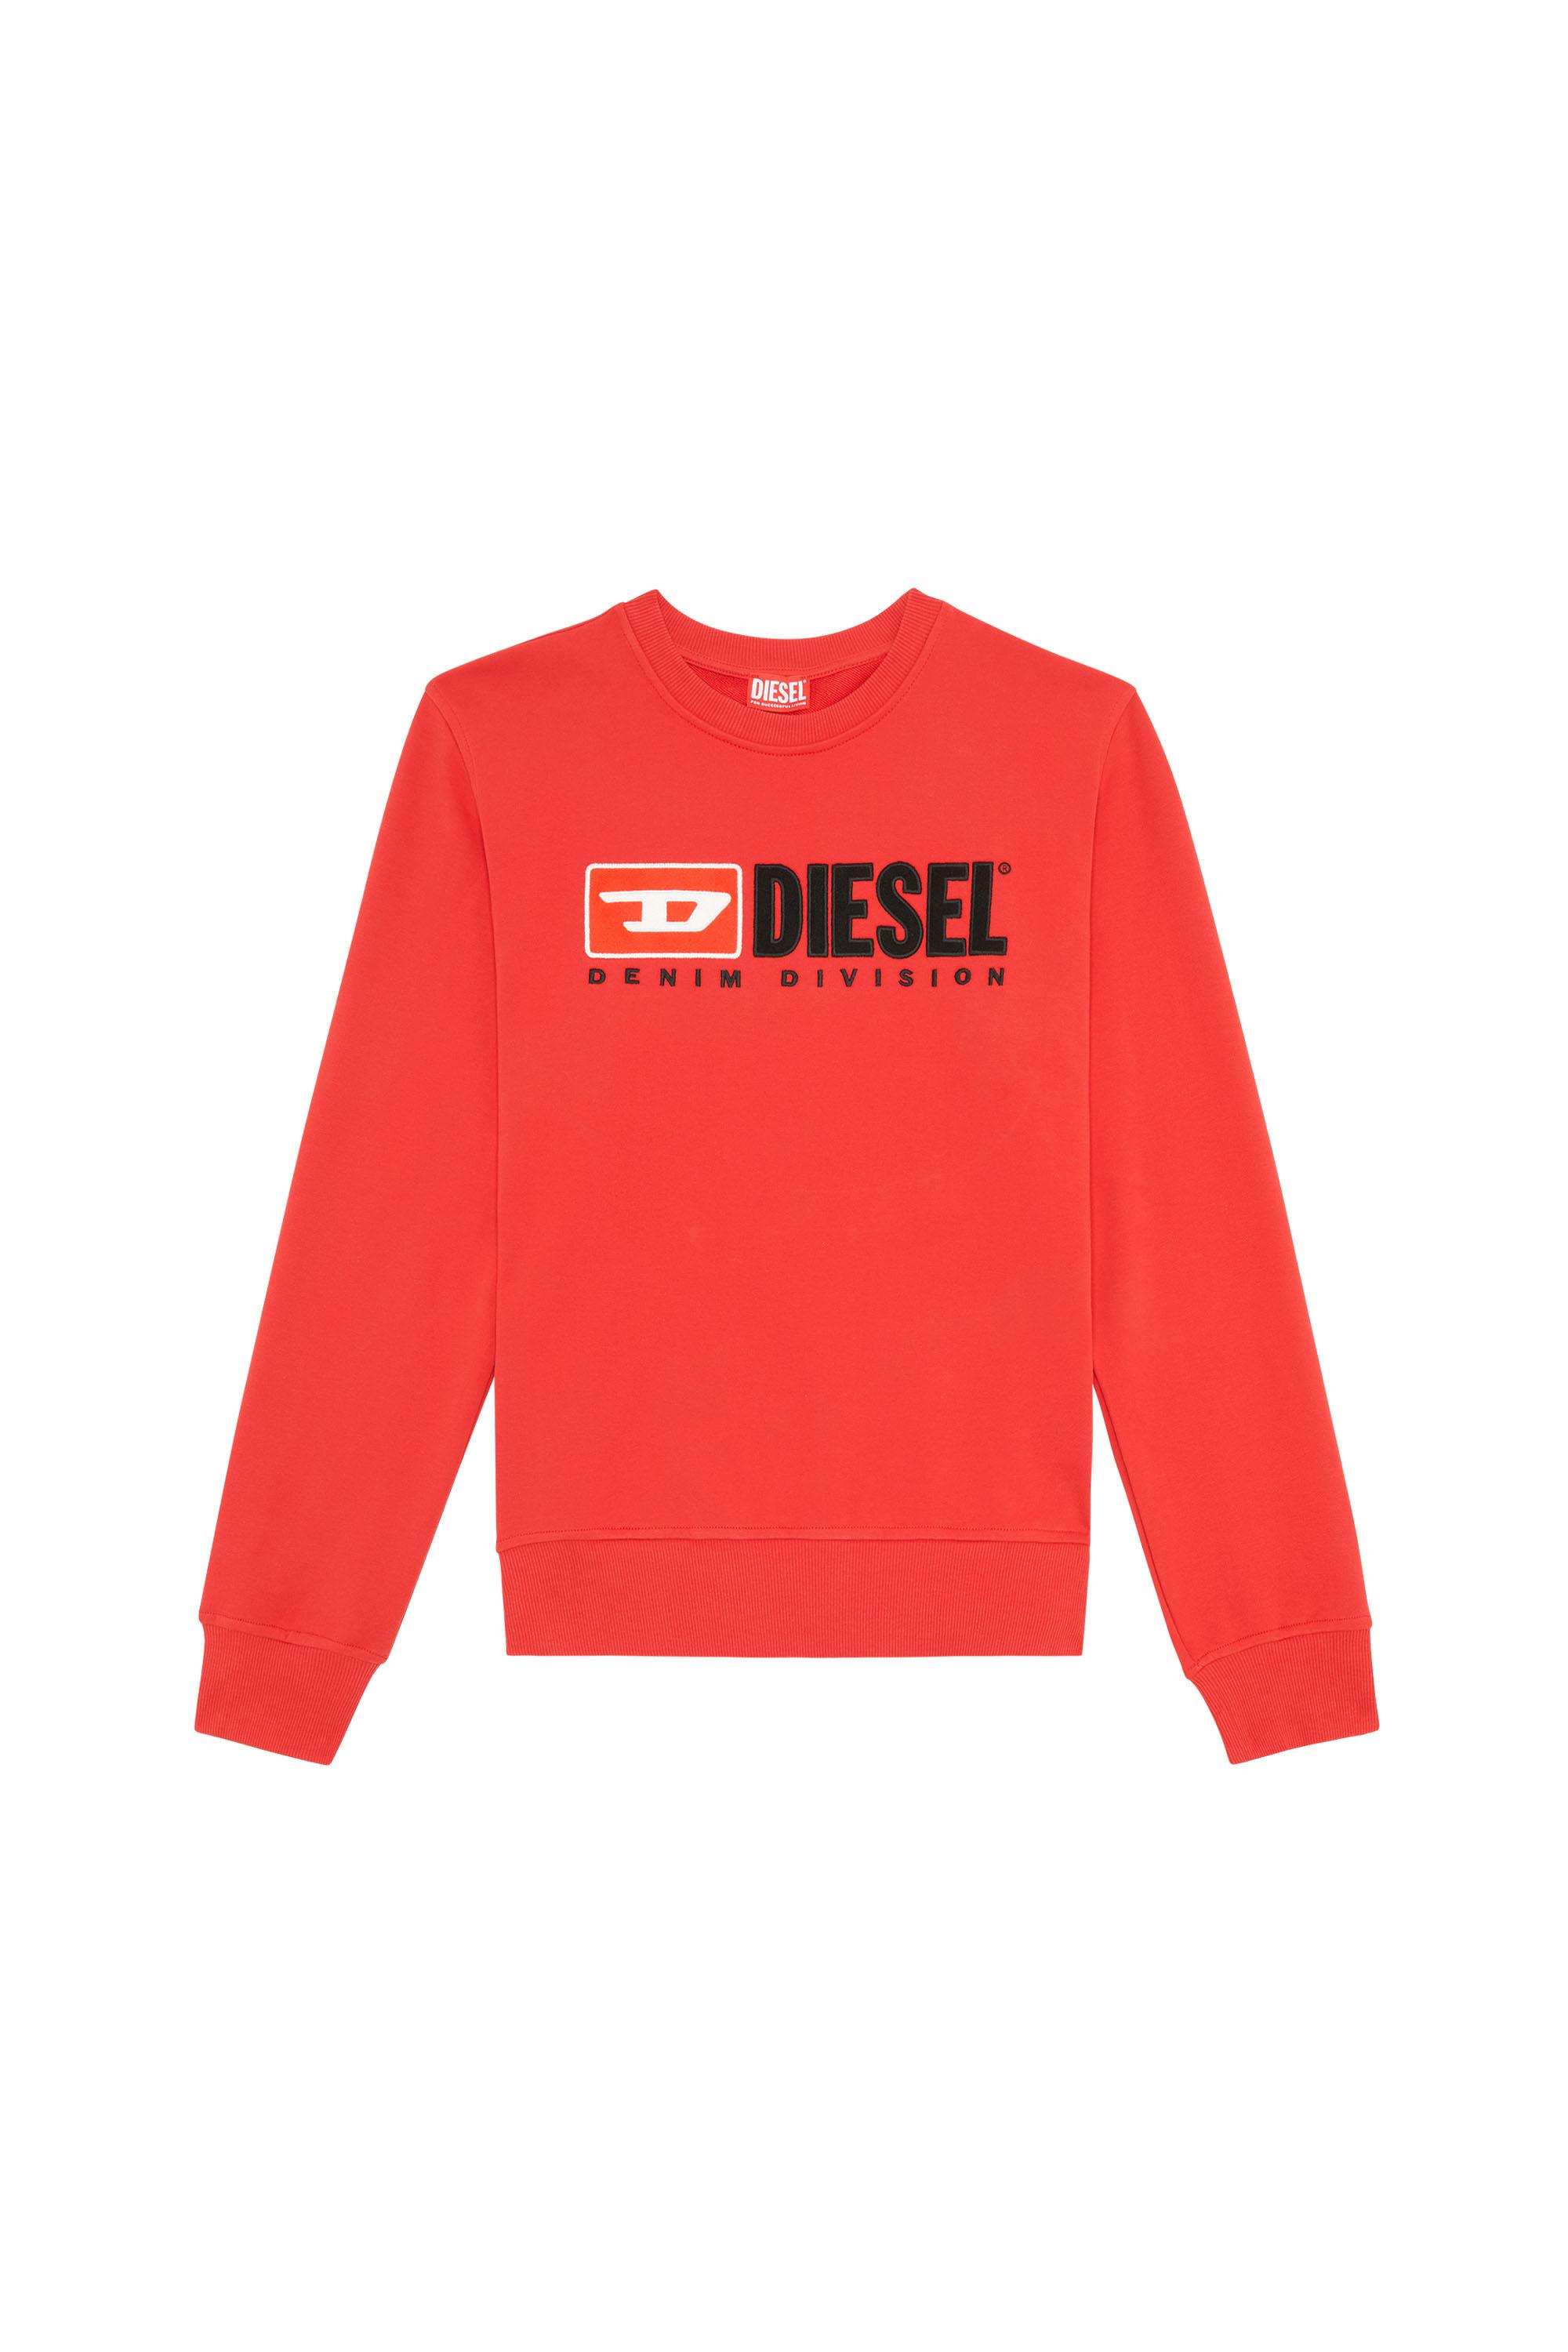 Diesel - S-GINN-DIV, Rojo - Image 2